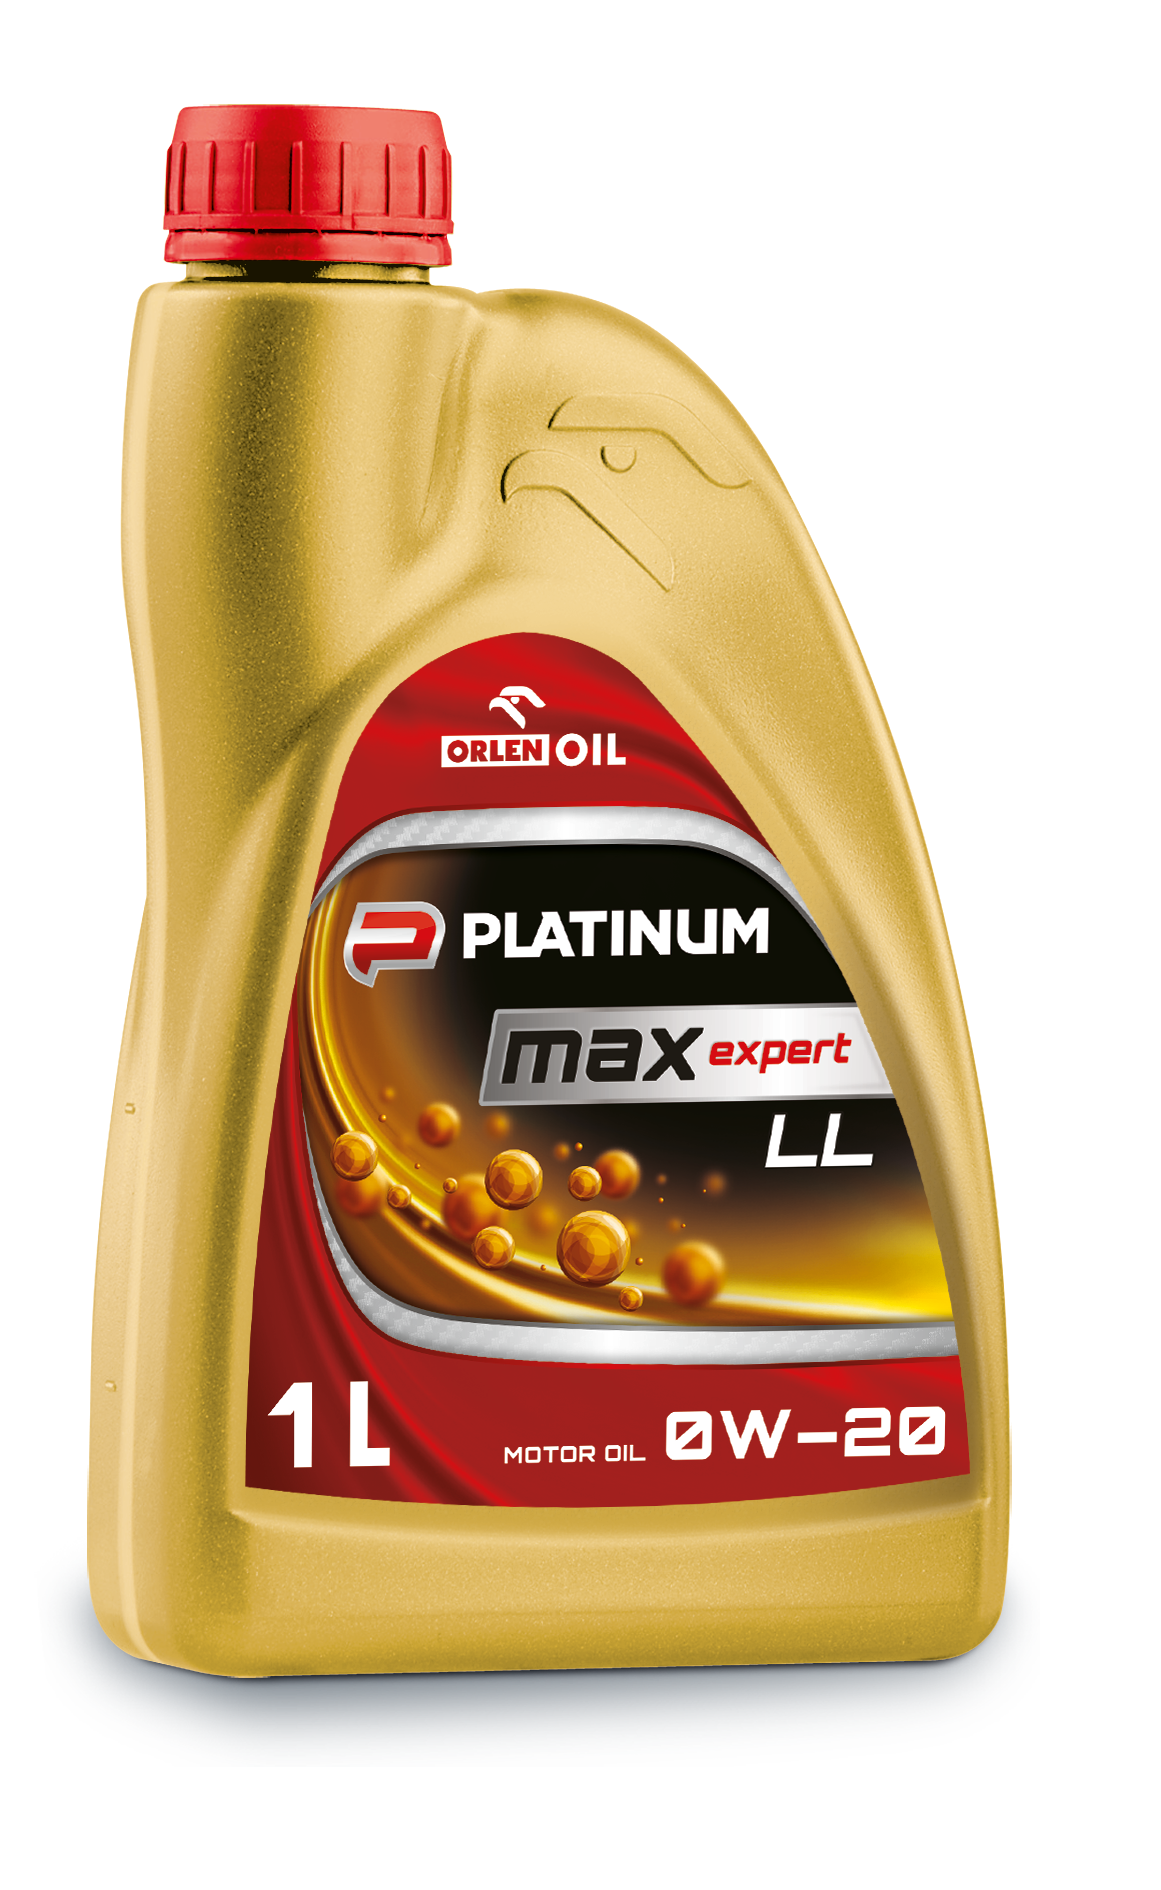 Olej silnikowy Orlen Oil Platinum Maxexpert LL 0W-20 B1L frontem